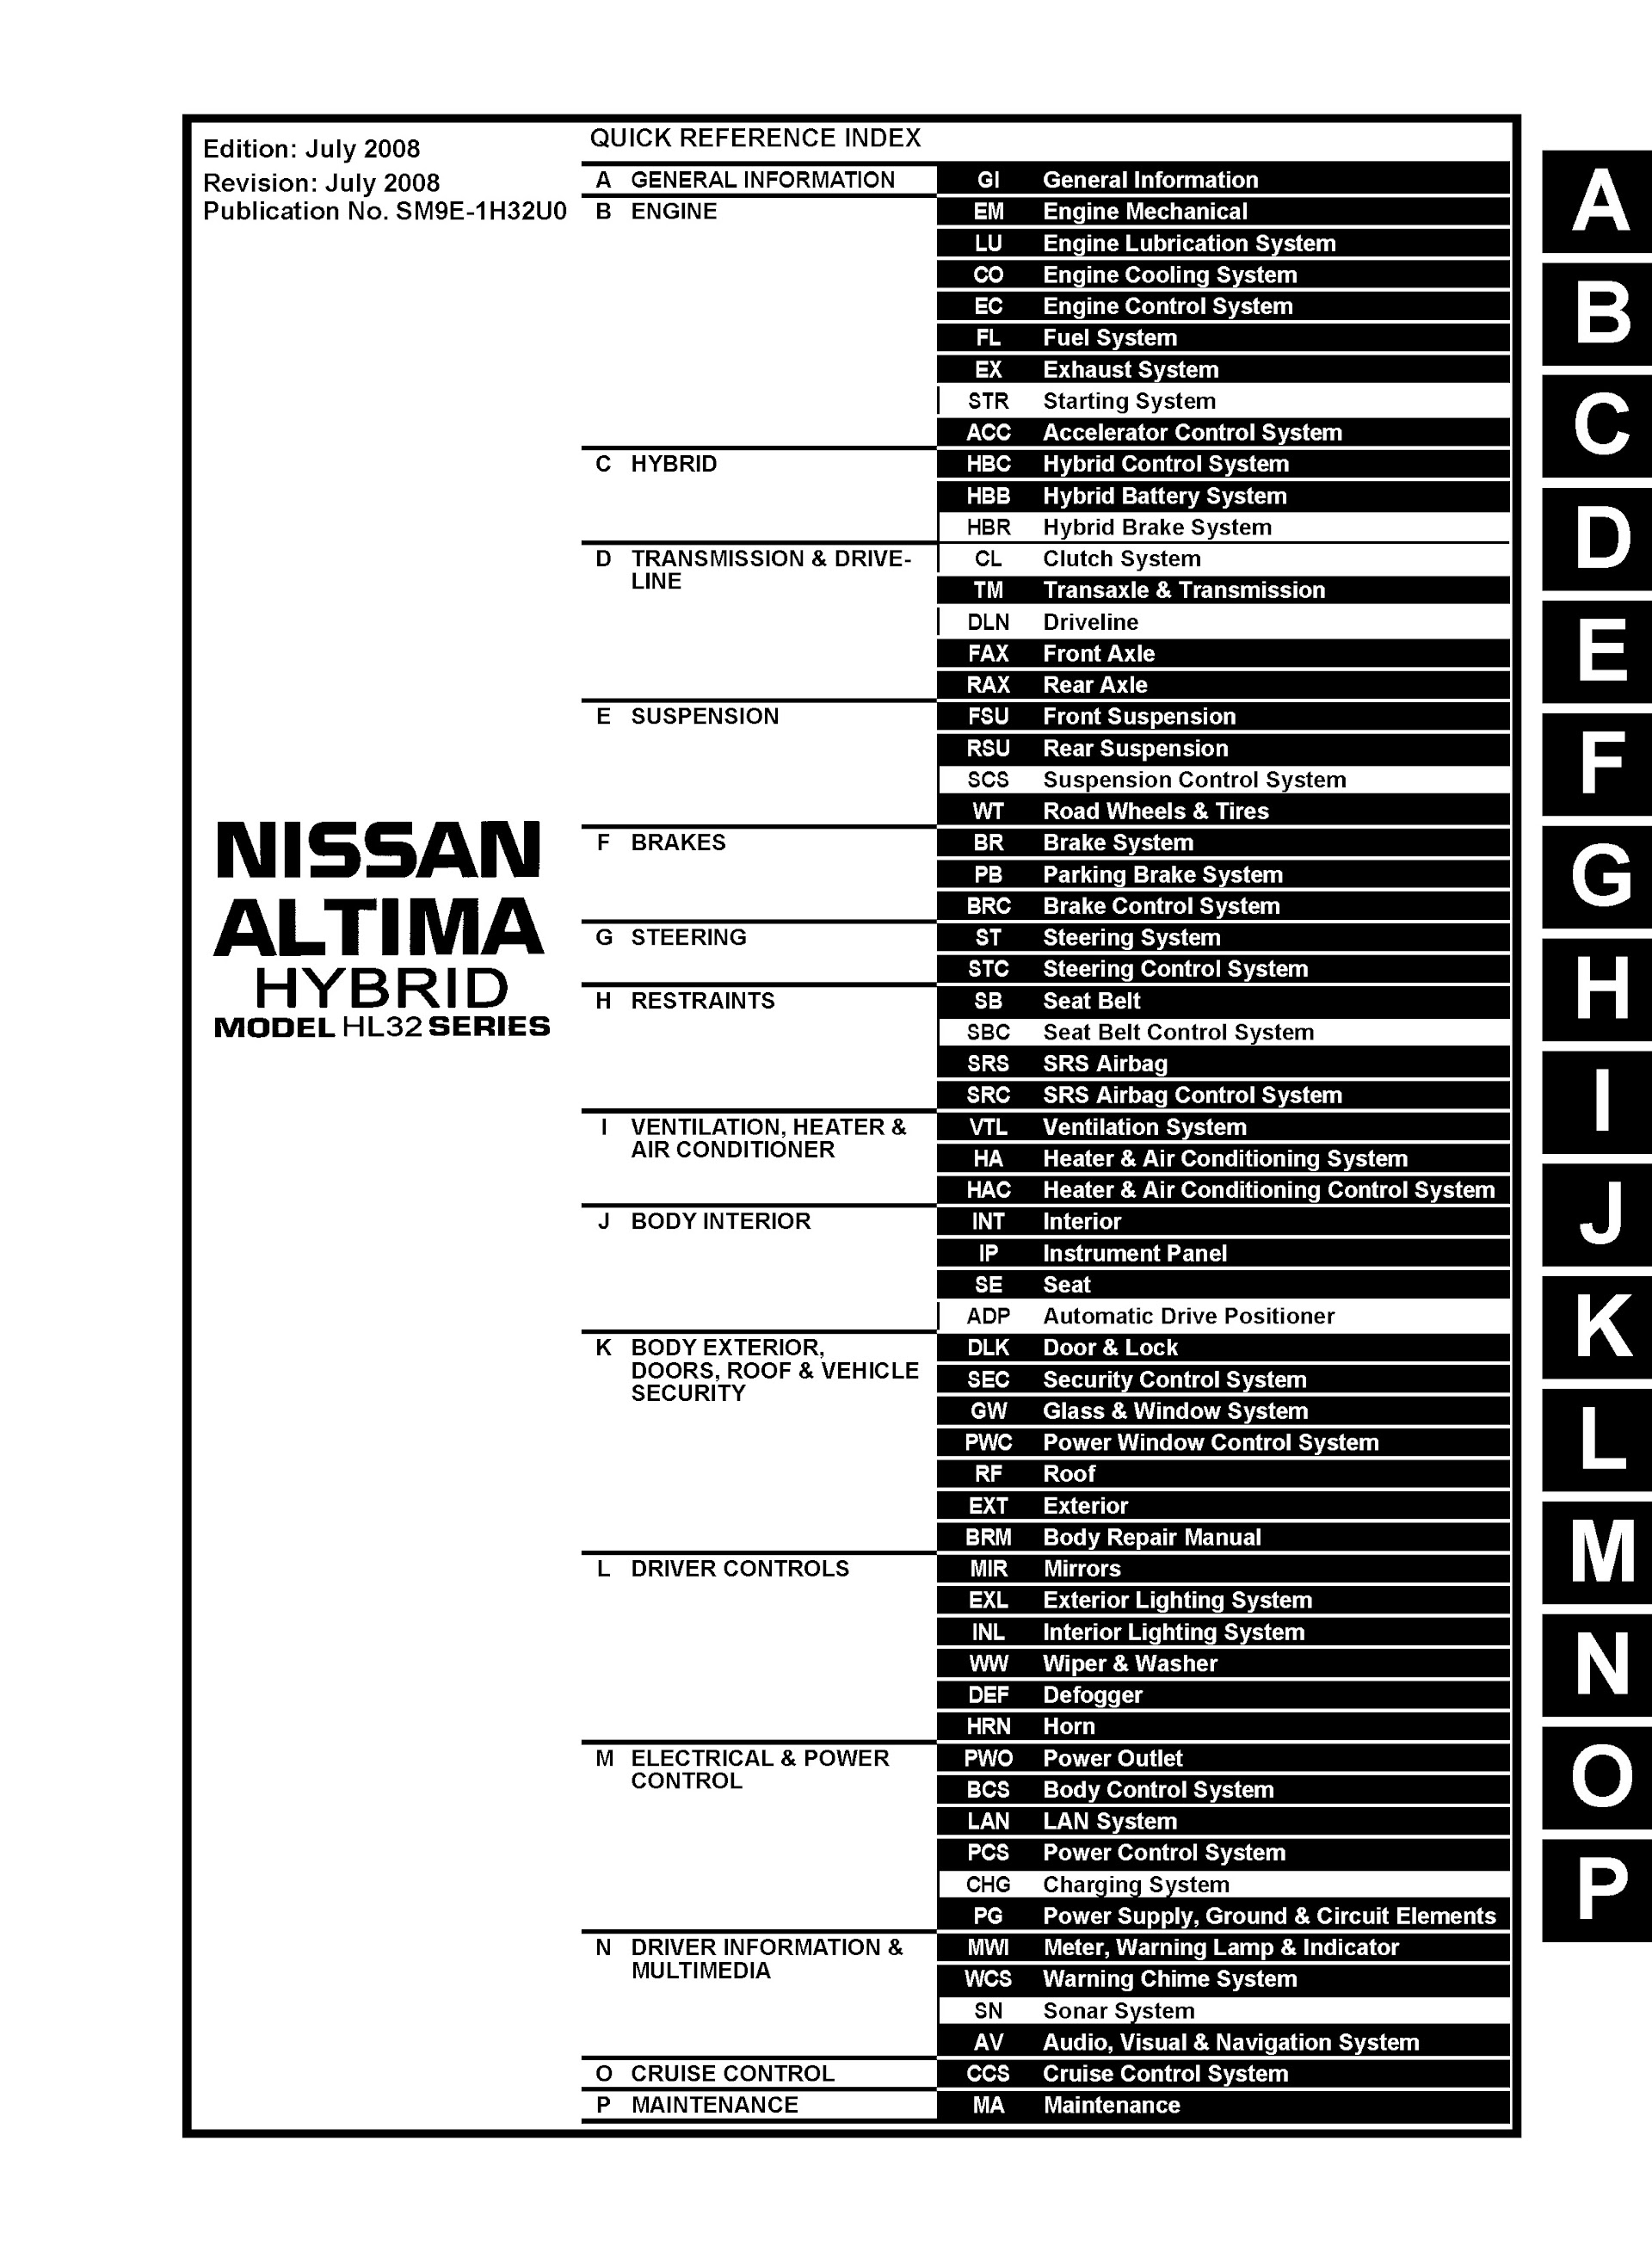 CONTENTS: 2009 Nissan Altima Hybrid Repair Manual, Model HL32 Series